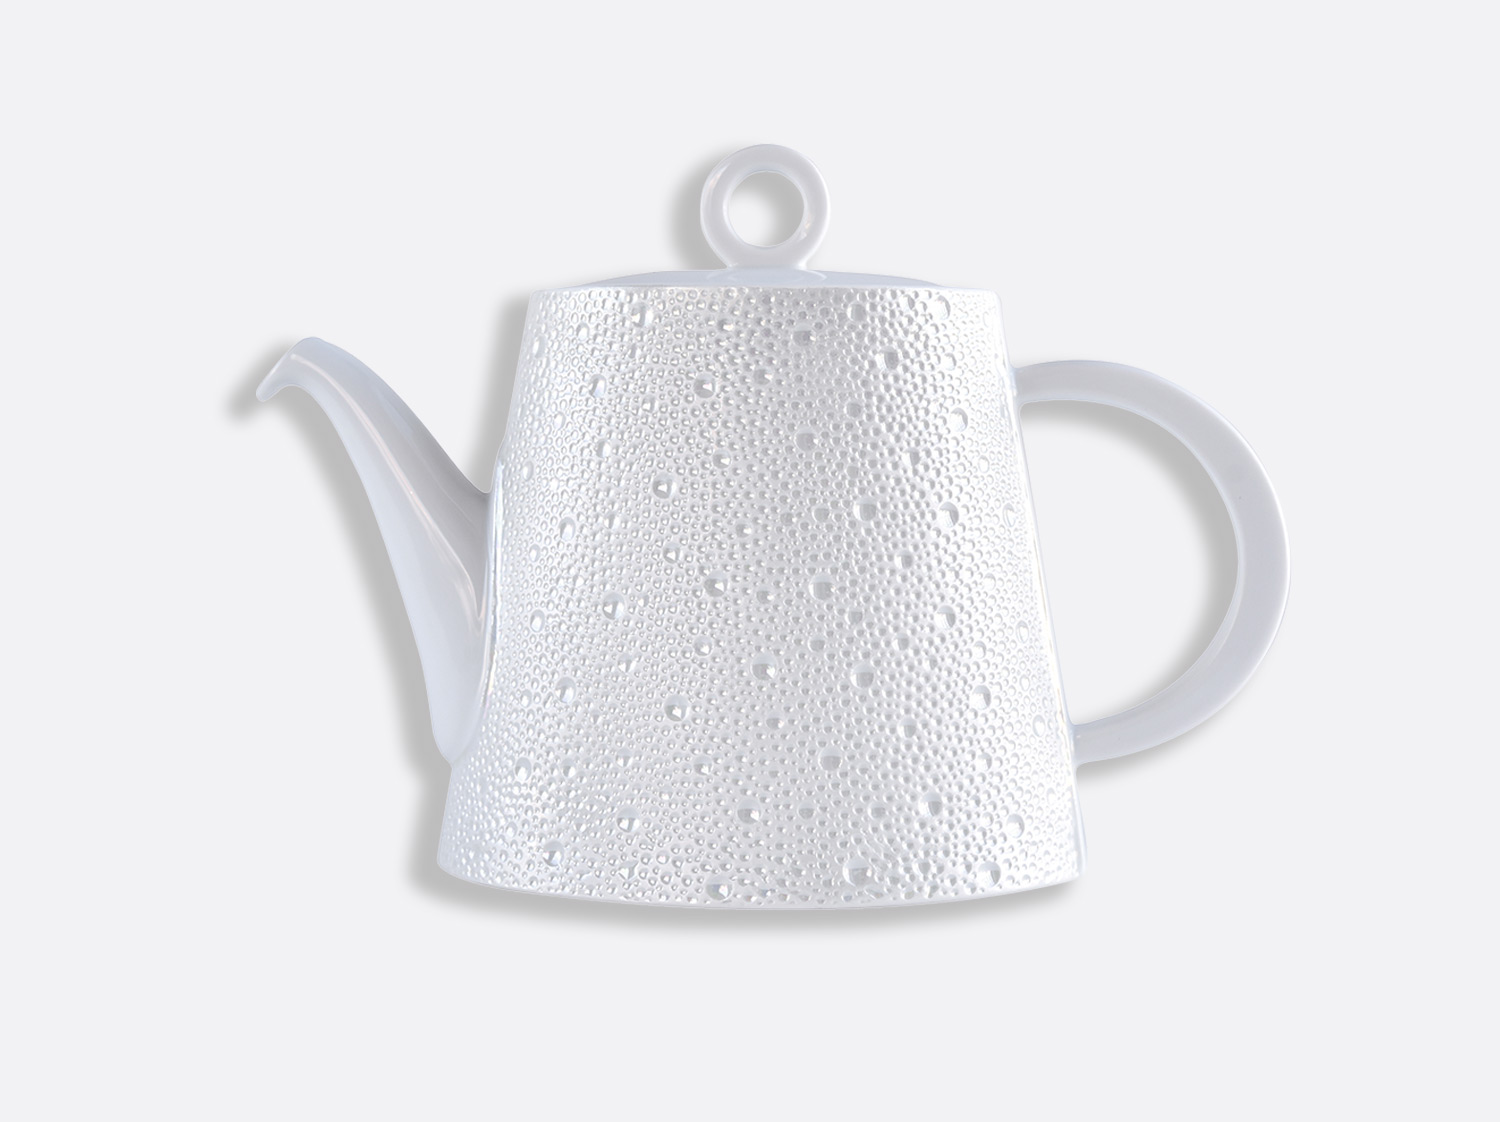 China Teapot 34 oz of the collection Écume Perle | Bernardaud